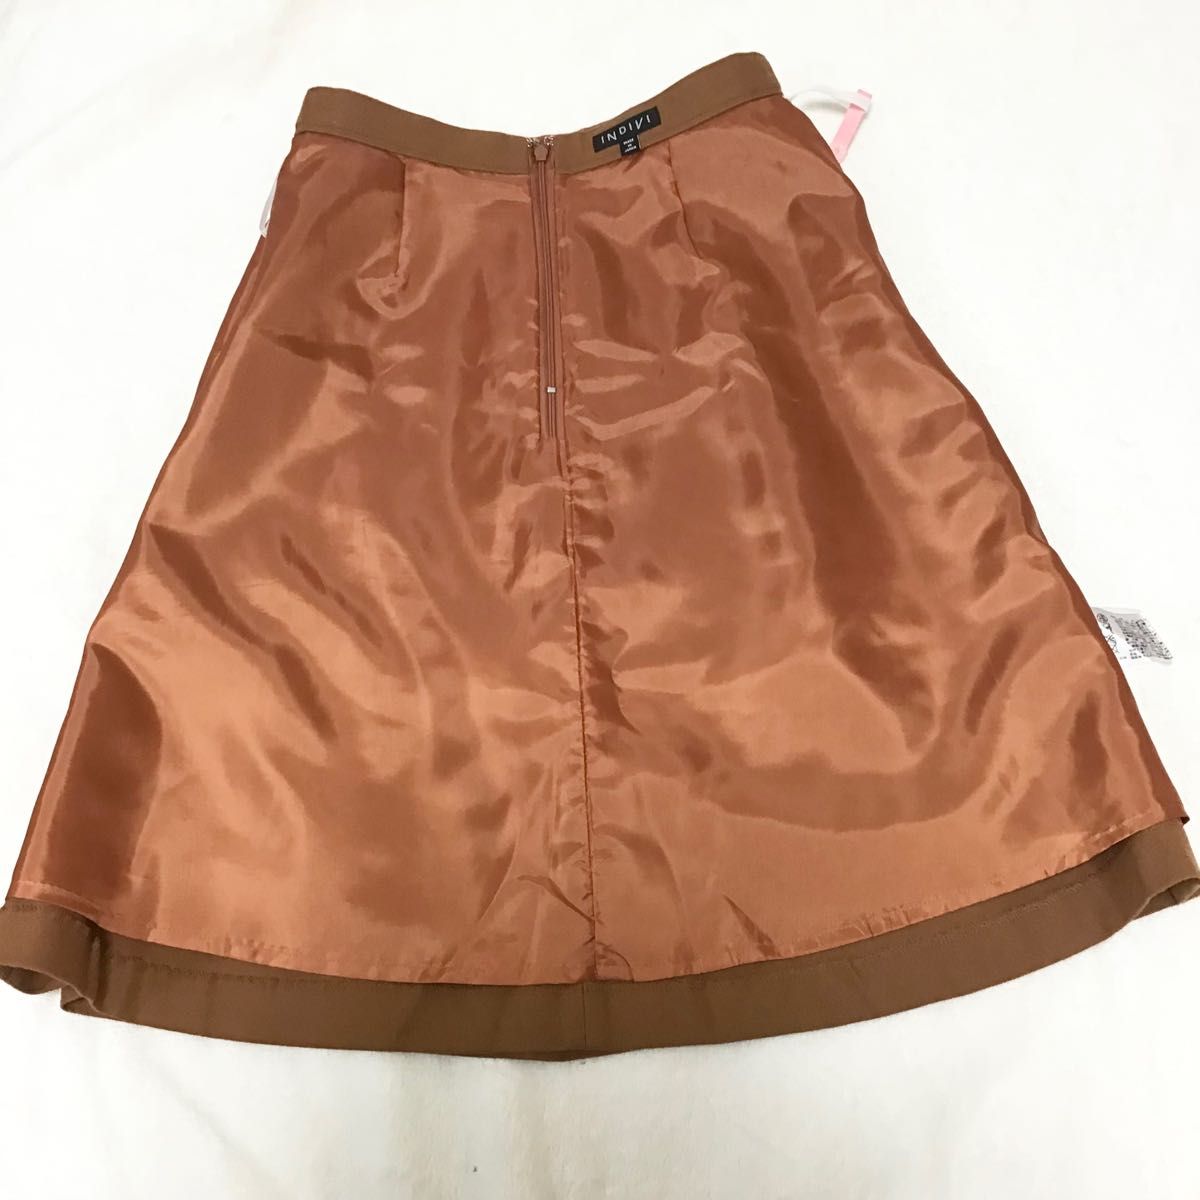 INDIVI 36 タックフレアスカート 日本製 ウール インディヴィ ワールド　ブラウン オレンジ 膝丈